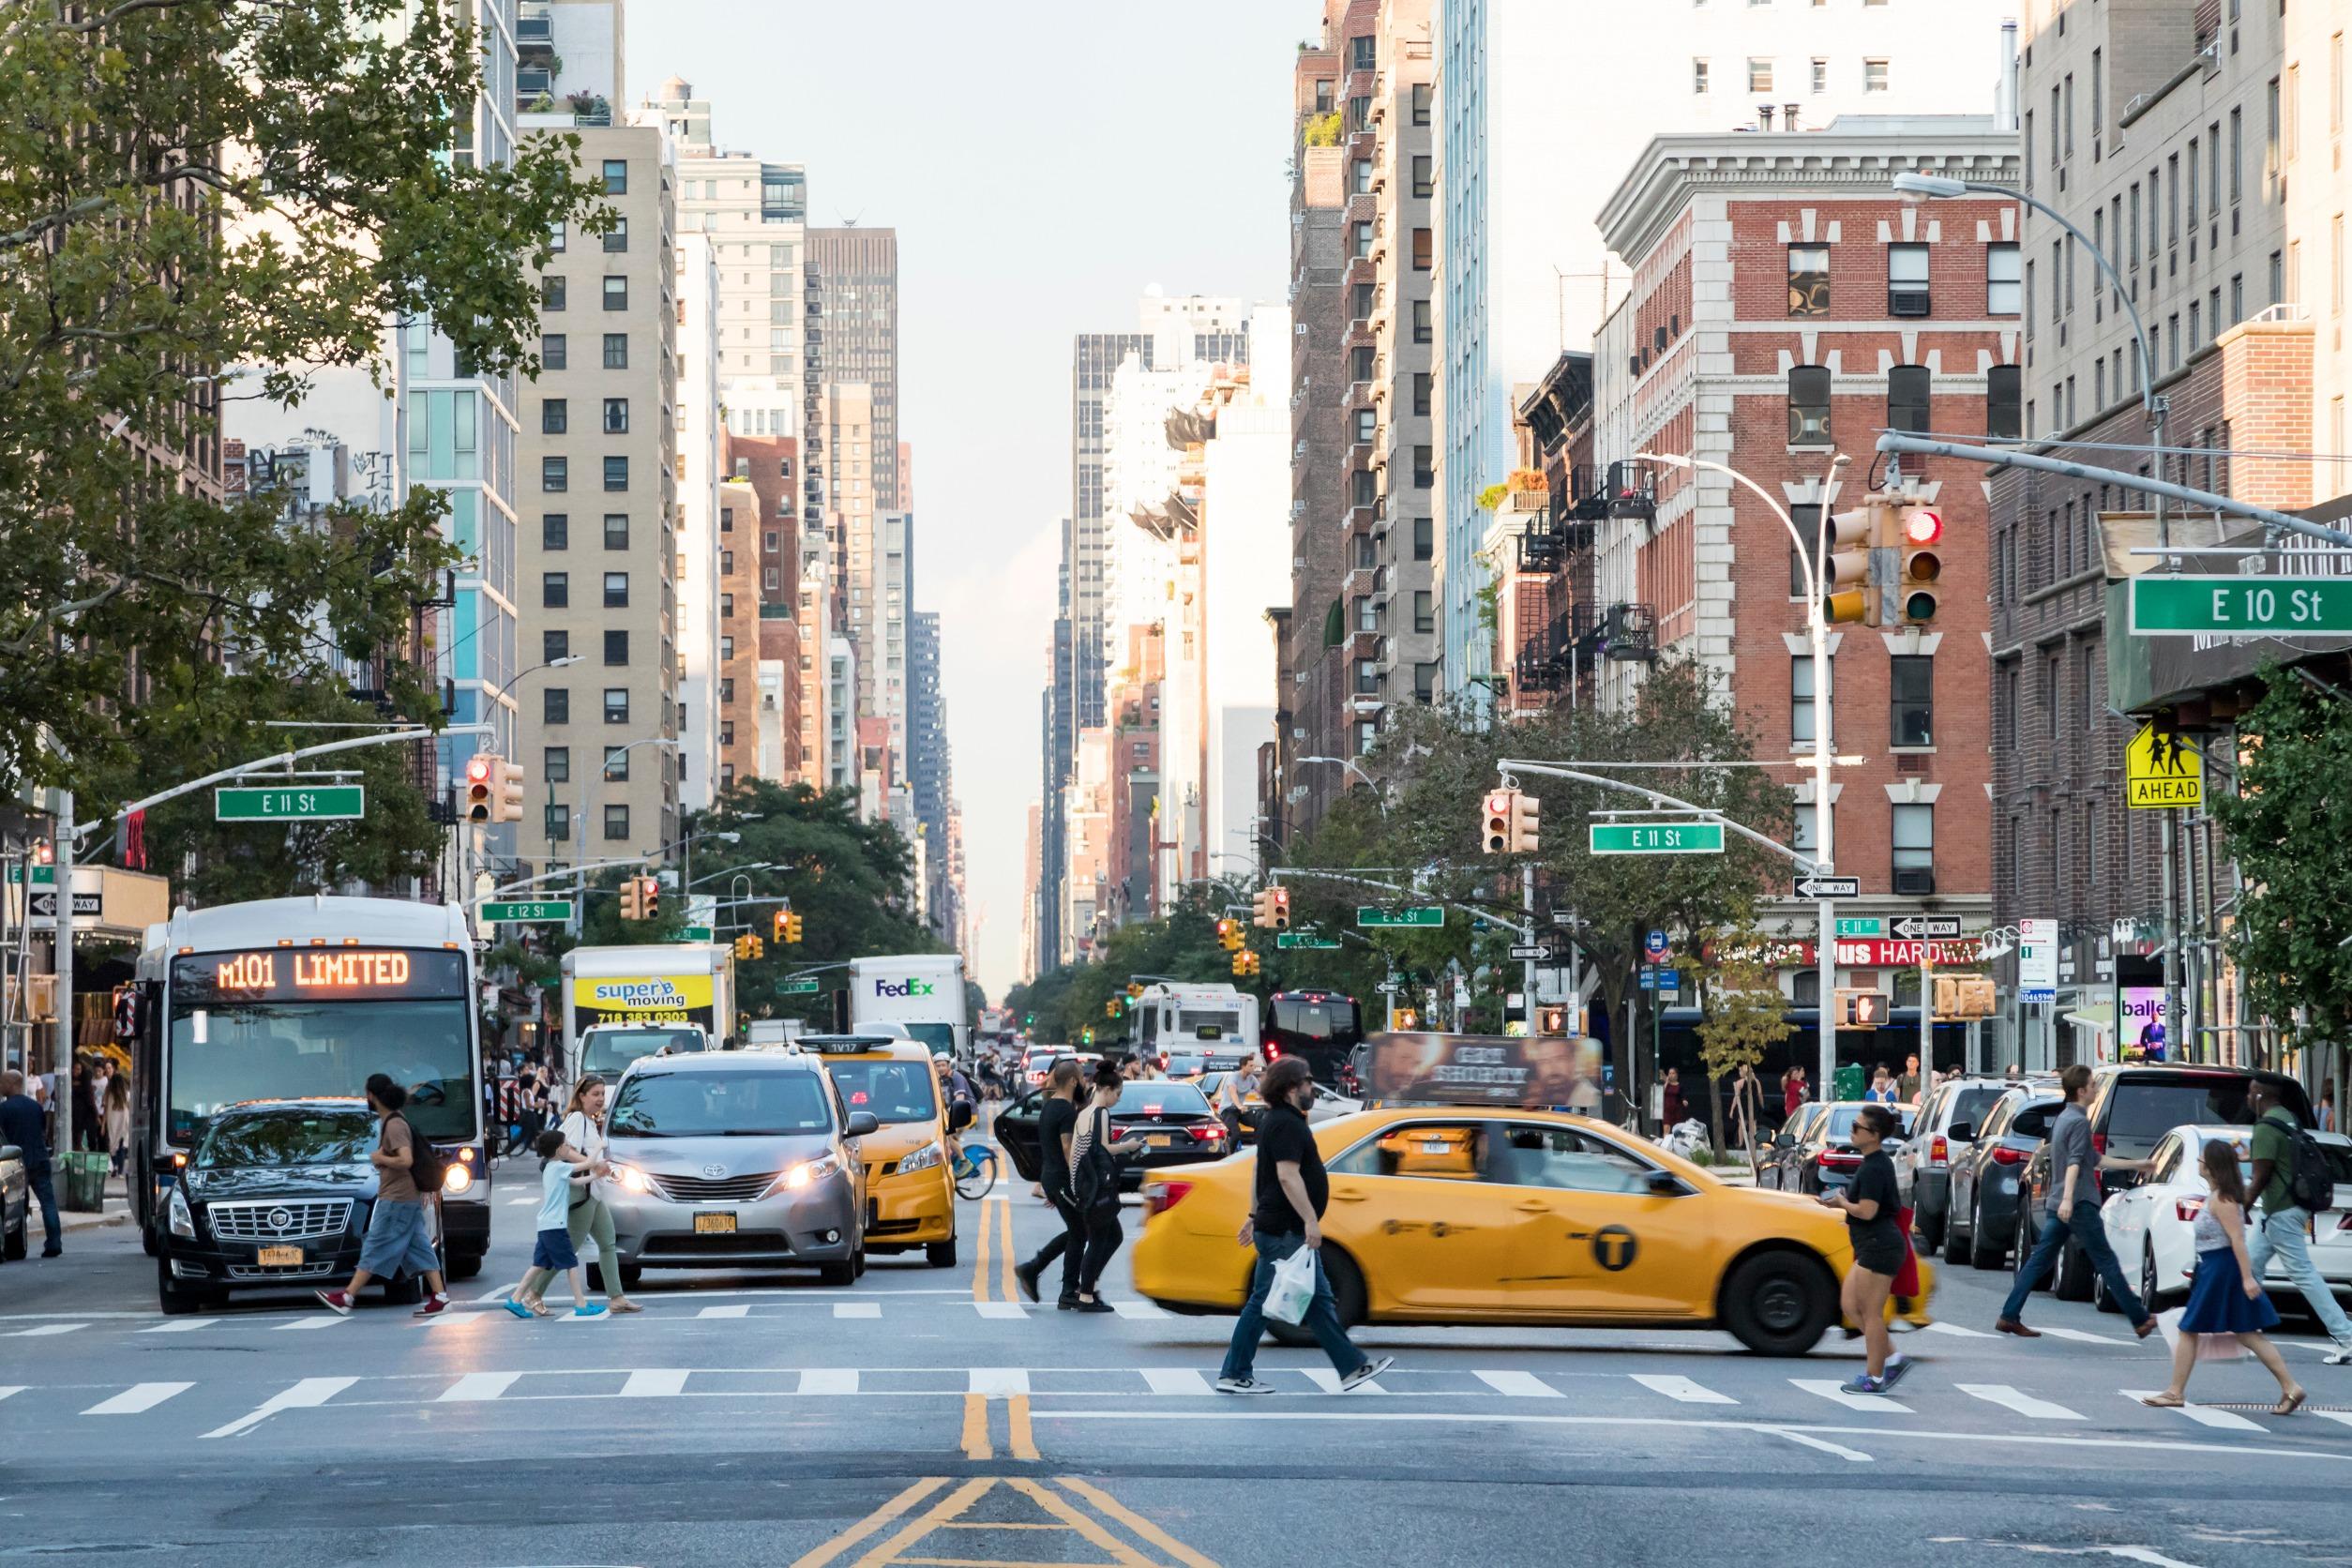 Tassa sul traffico New York: come funziona e chi la paga - SicurAUTO.it